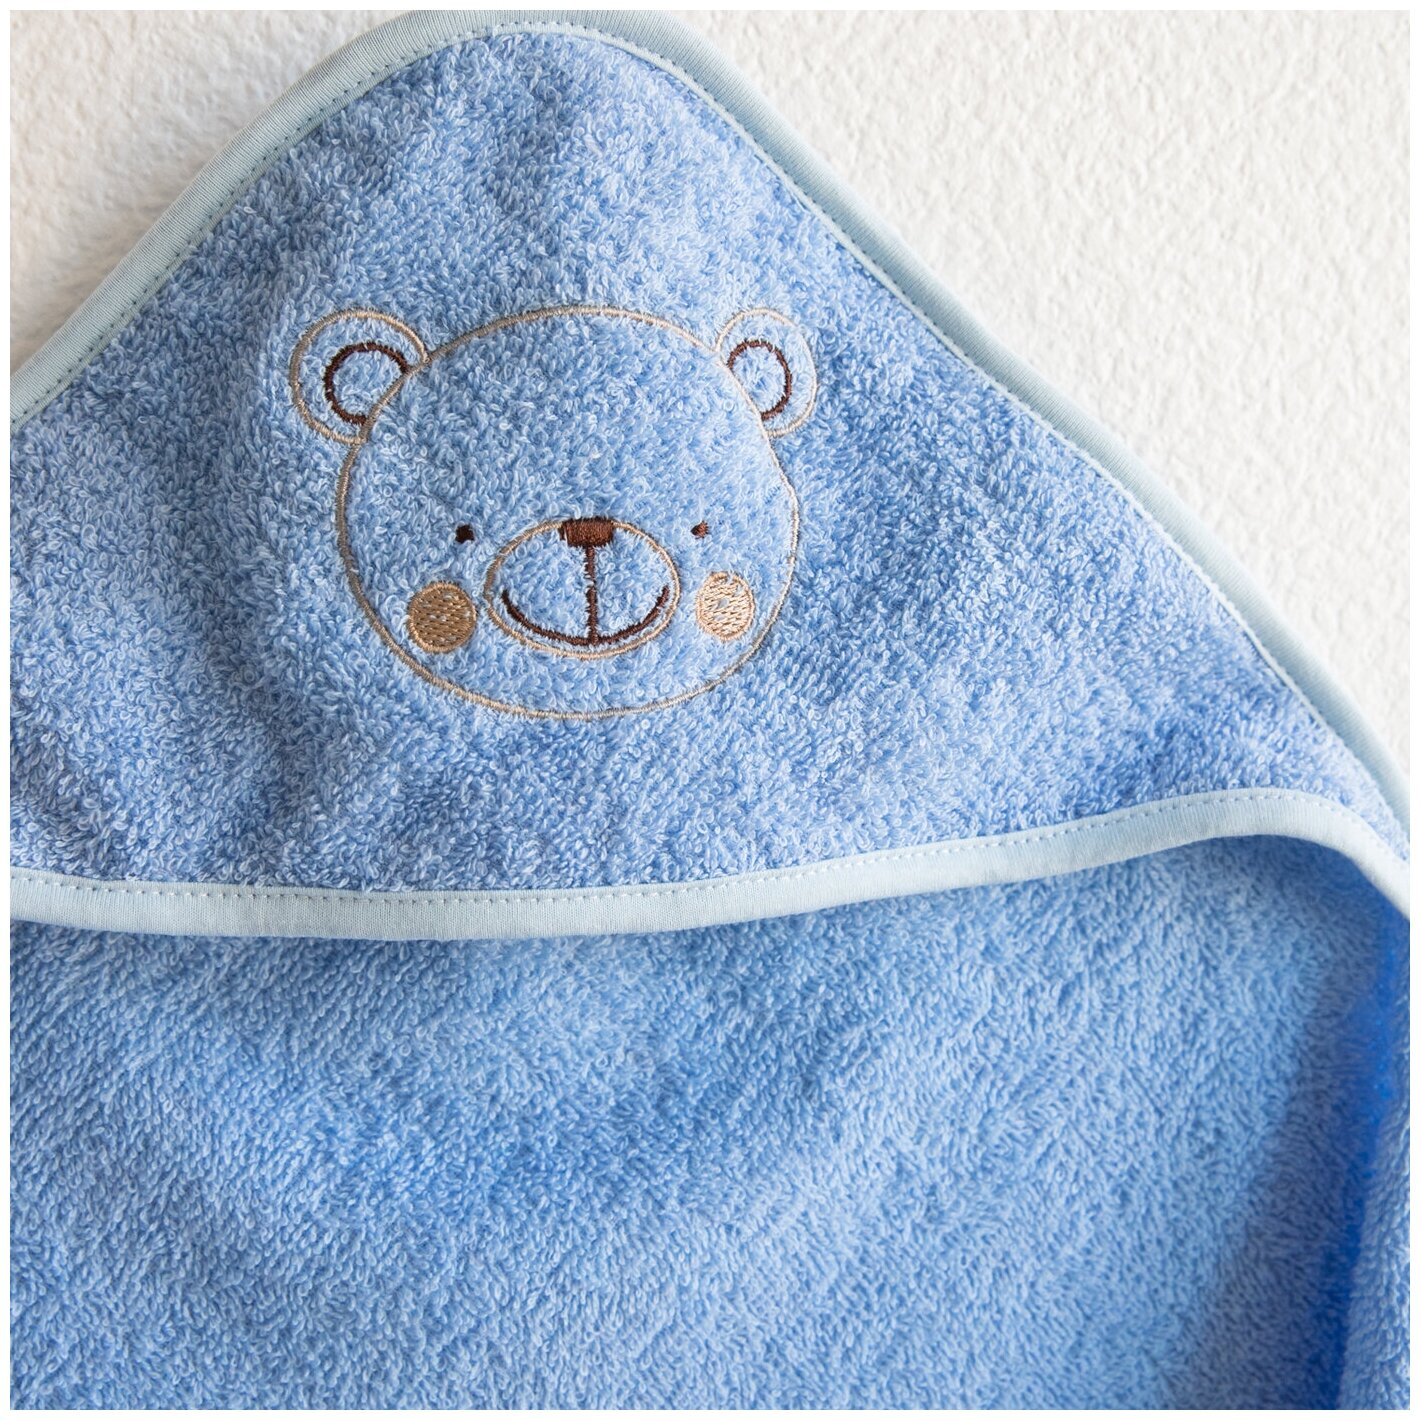 Полотенце для новорожденного с капюшоном детское махровое 75x75 см, полотенце уголок для новорожденного, для бассейна